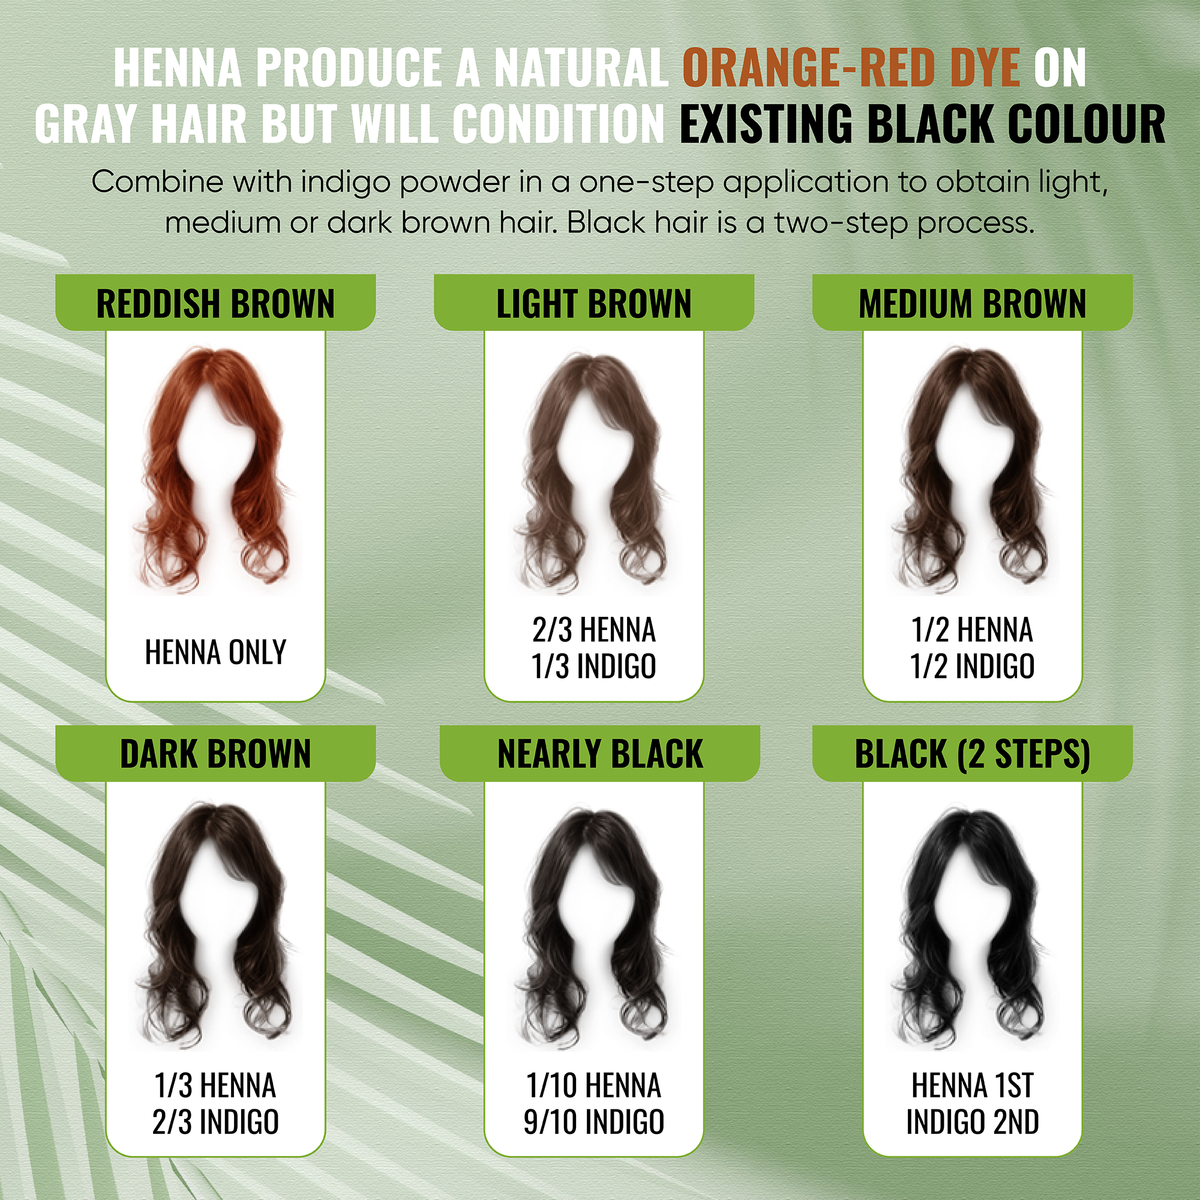 Henna Powder Hair Dye